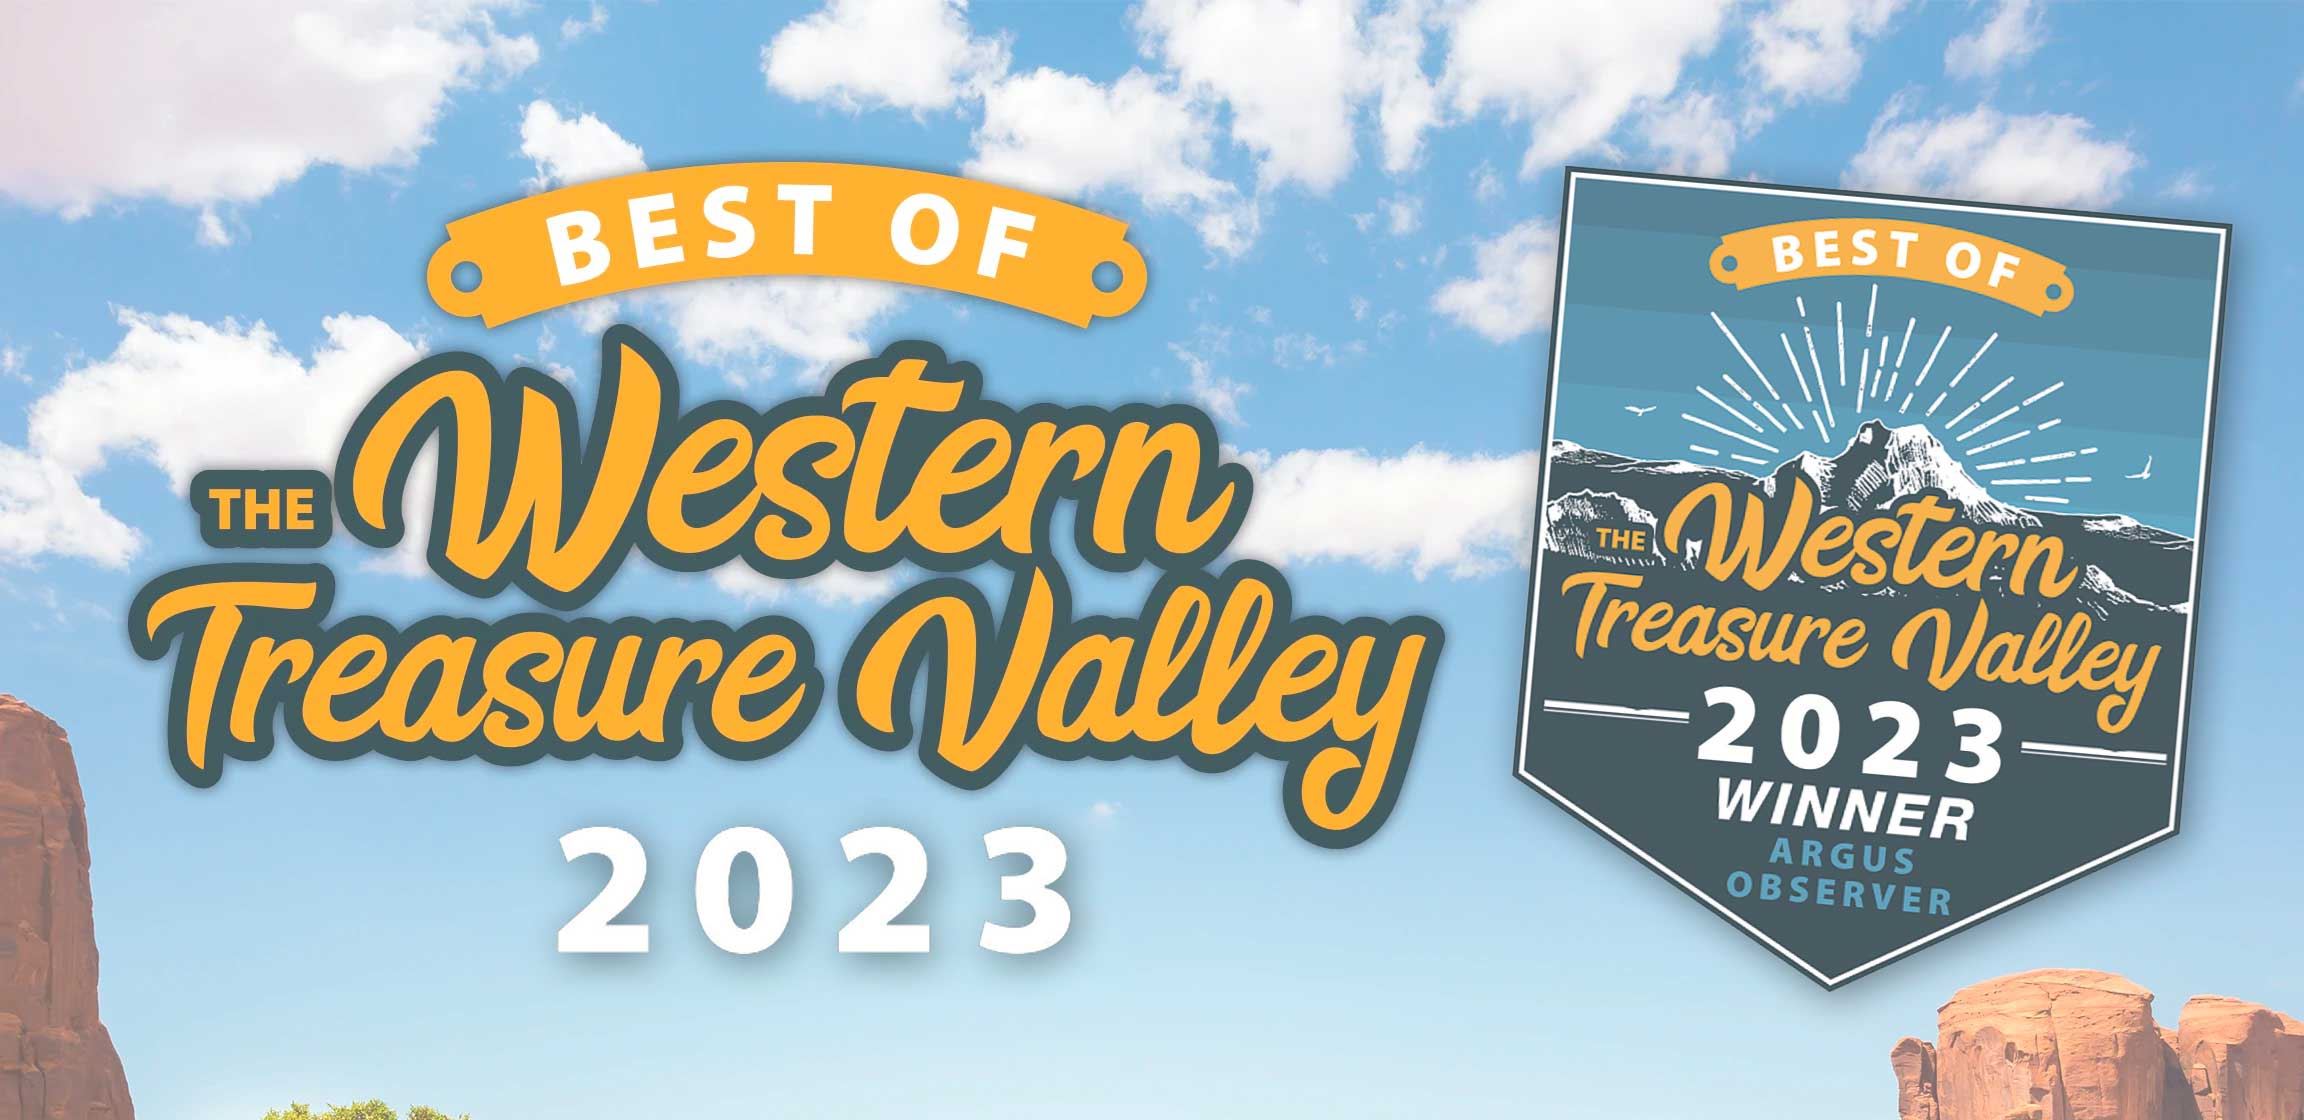 Argus Observer - Best of Western Treasure Valley 2023